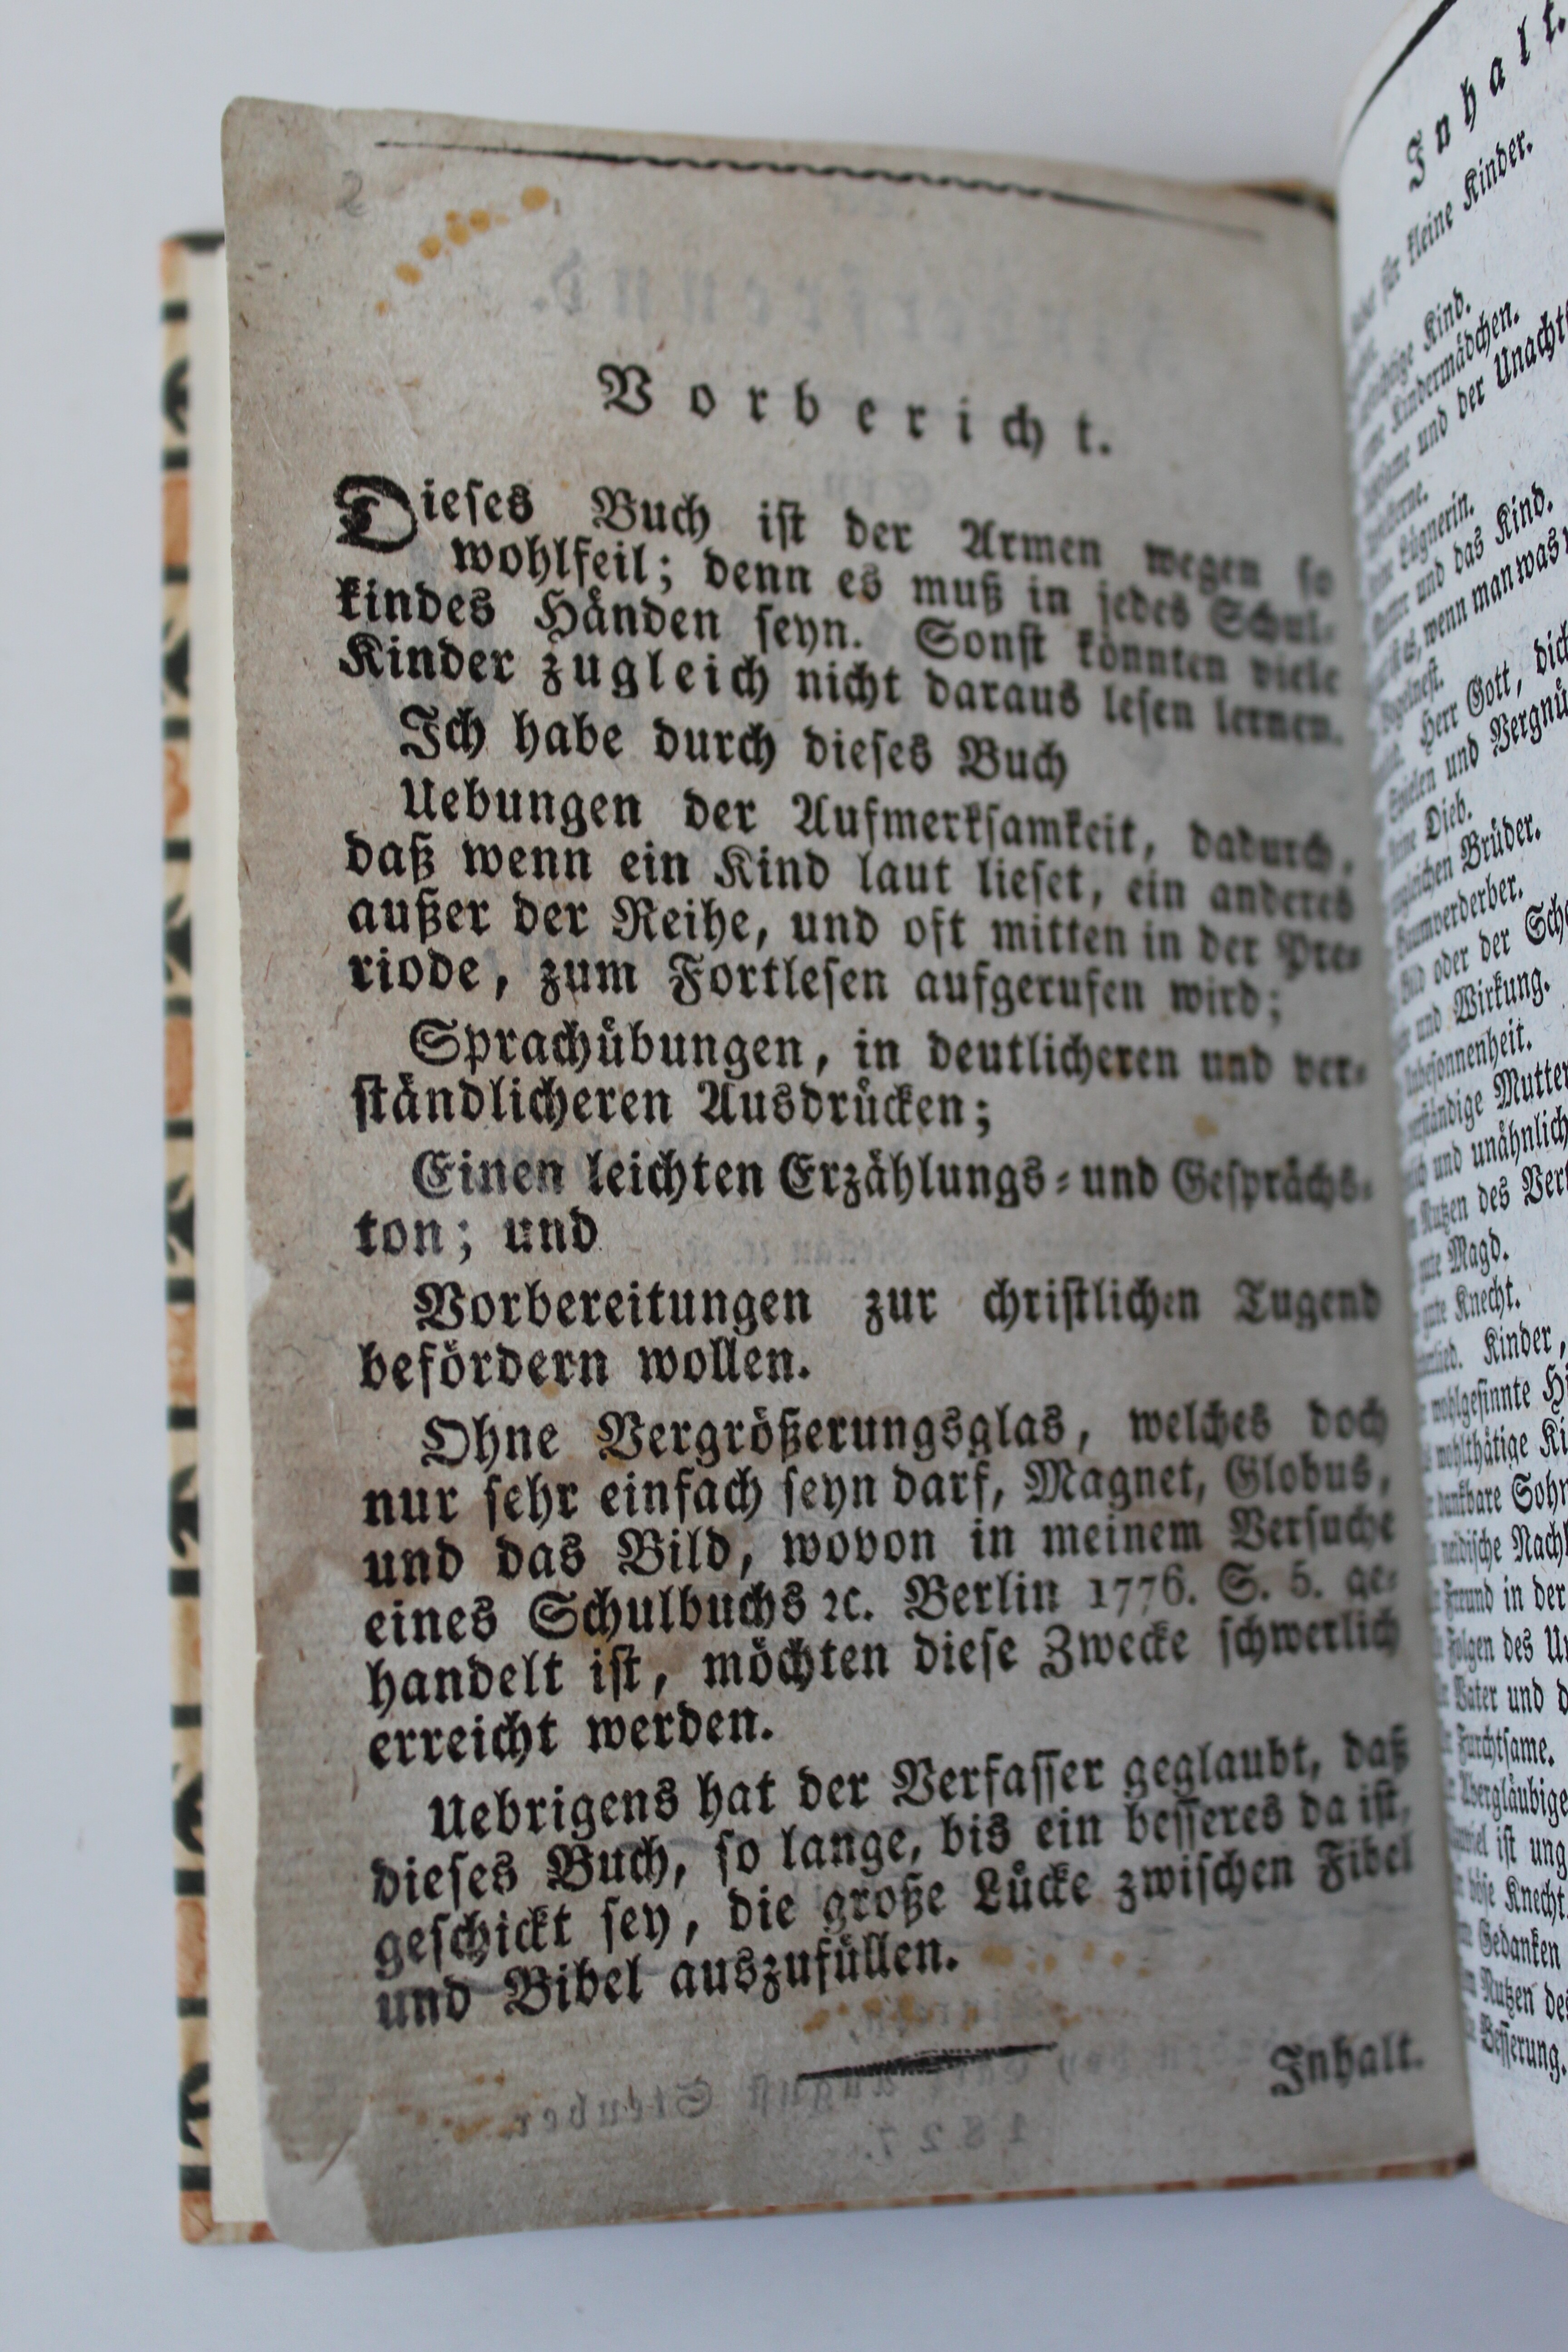 Der Kinderfreund. Ein Lesebuch zum Gebrauche in Stadt- und Landschulen, von Friedrich Eberhardt. von Rochow. Rinteln, 1827 (Reckahner Museen CC BY-NC-SA)